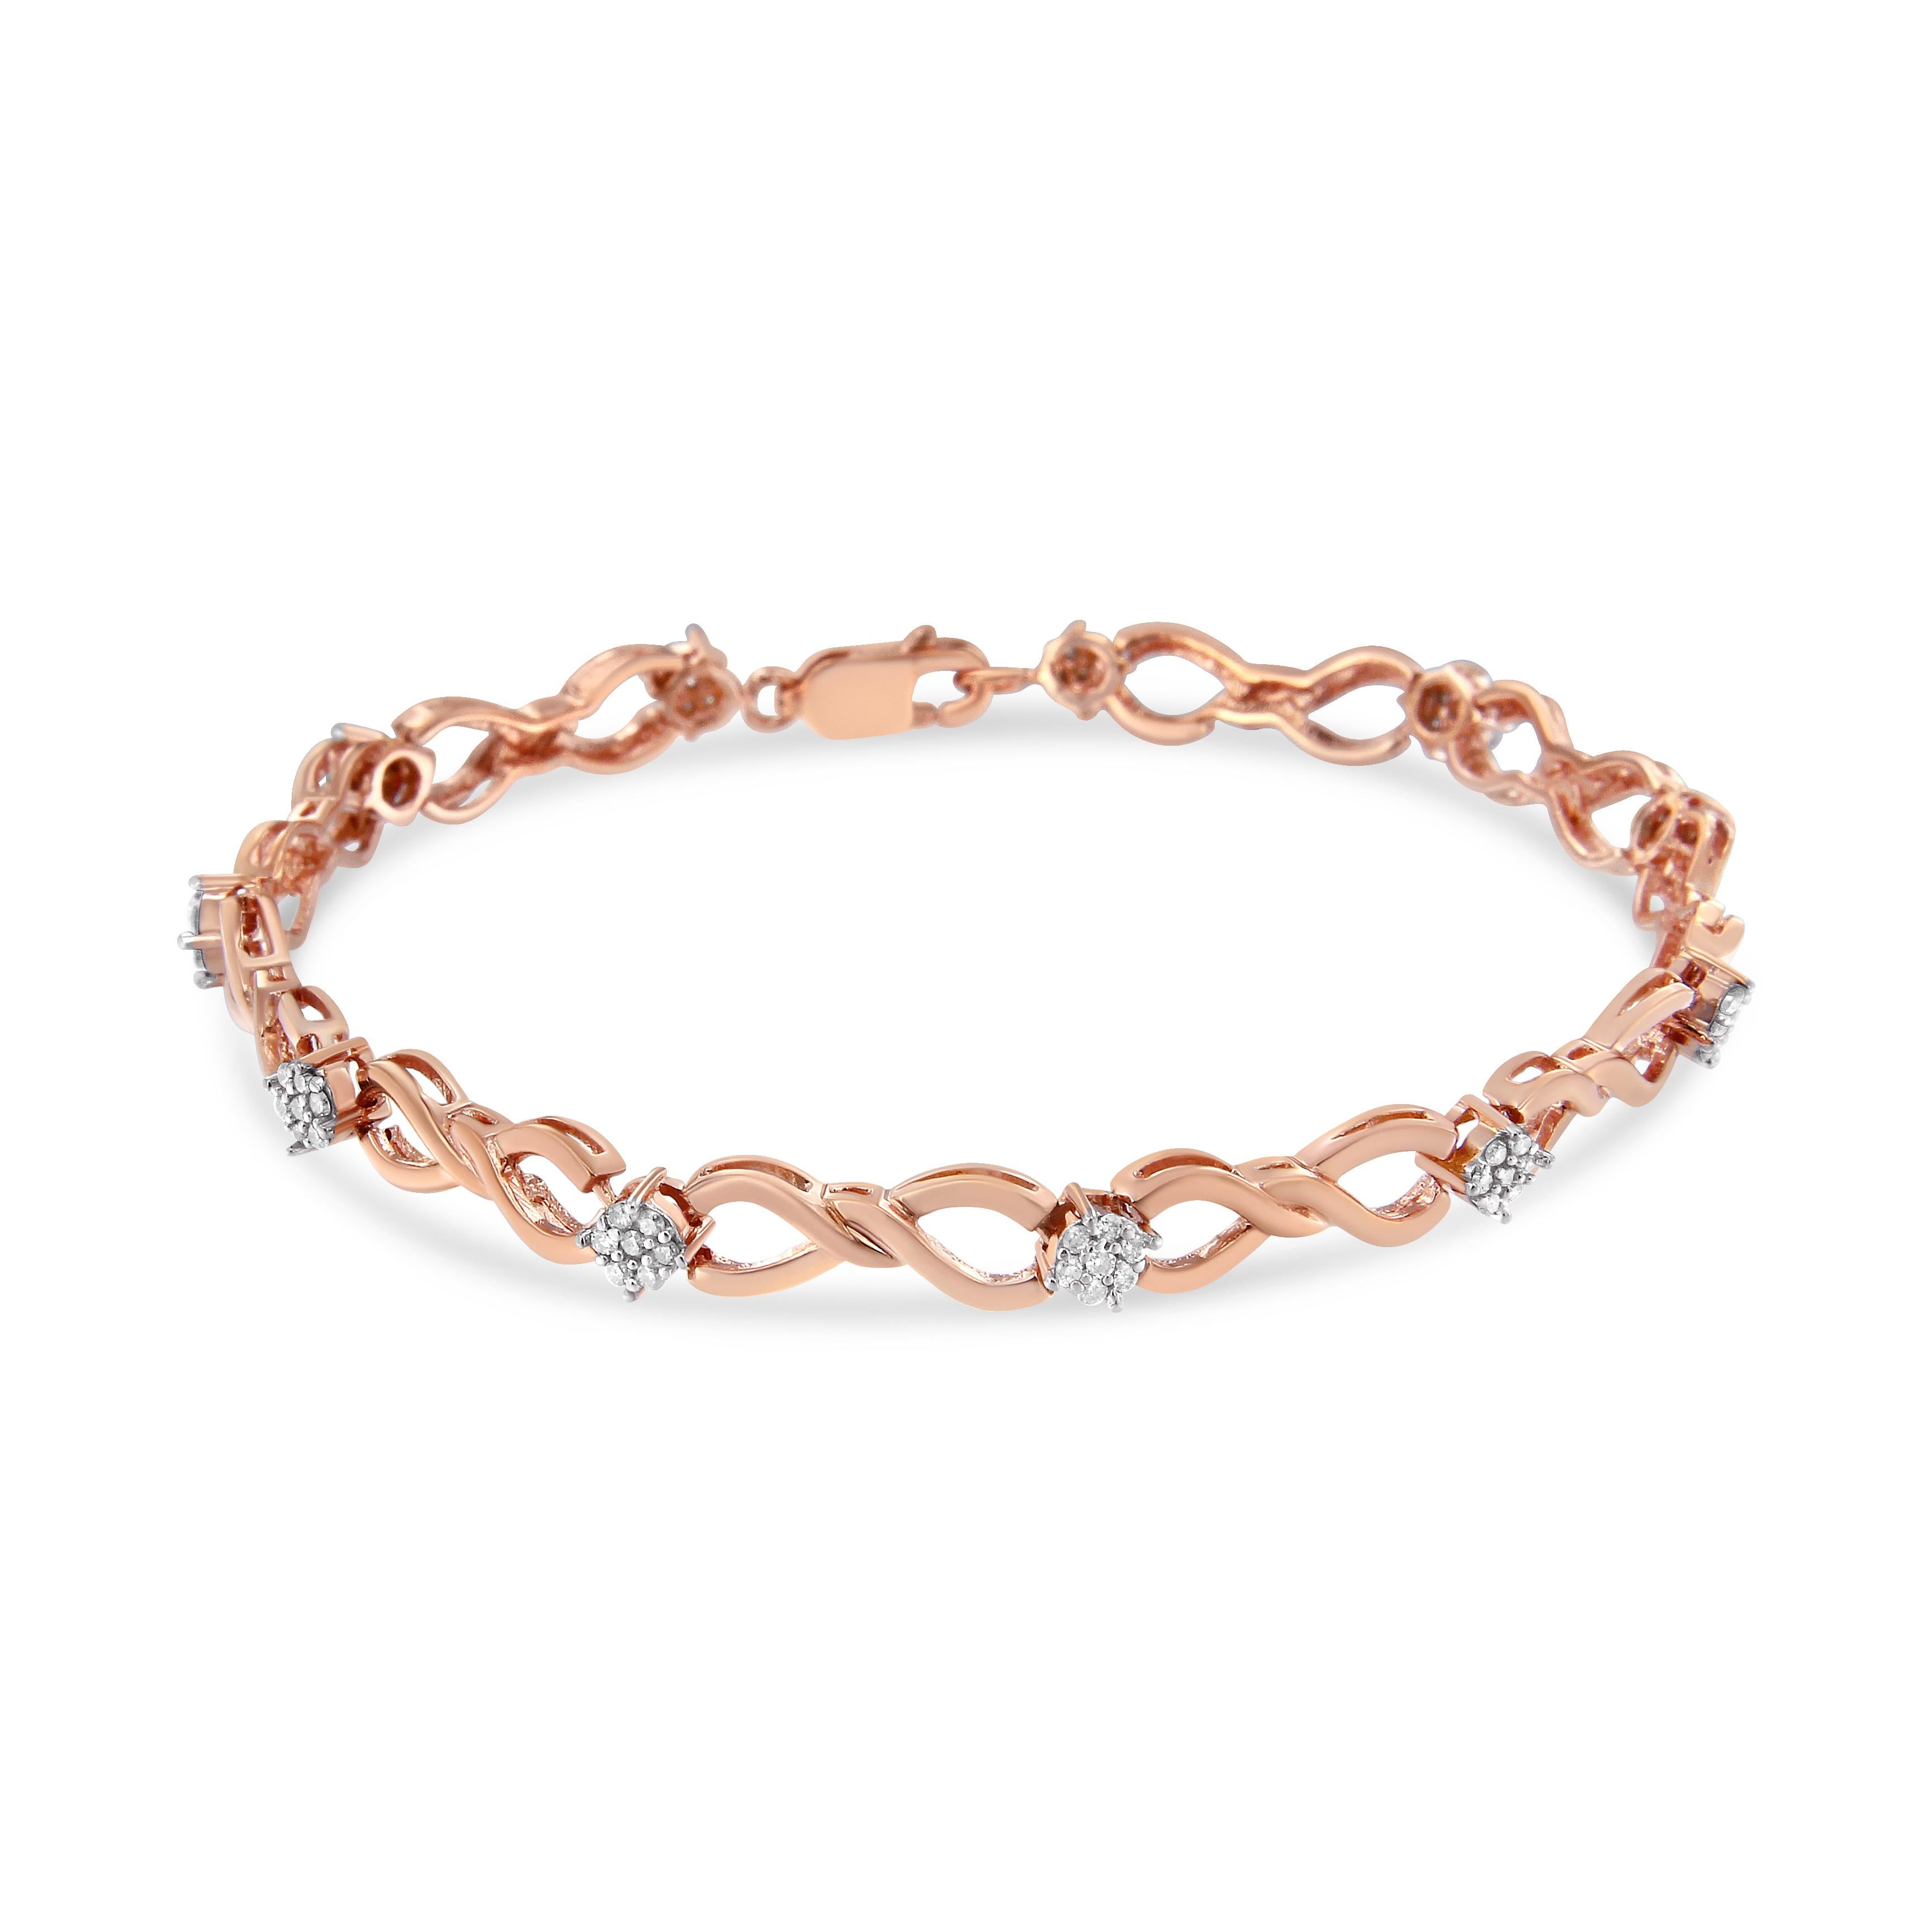 Donnez du charme à votre look en portant ce magnifique bracelet de tennis. Fabriqué en or rose pur, ce bracelet présente des rubans entrelacés, ponctués de grappes de diamants étincelants, ornés de diamants ronds étincelants. Ce superbe bijou